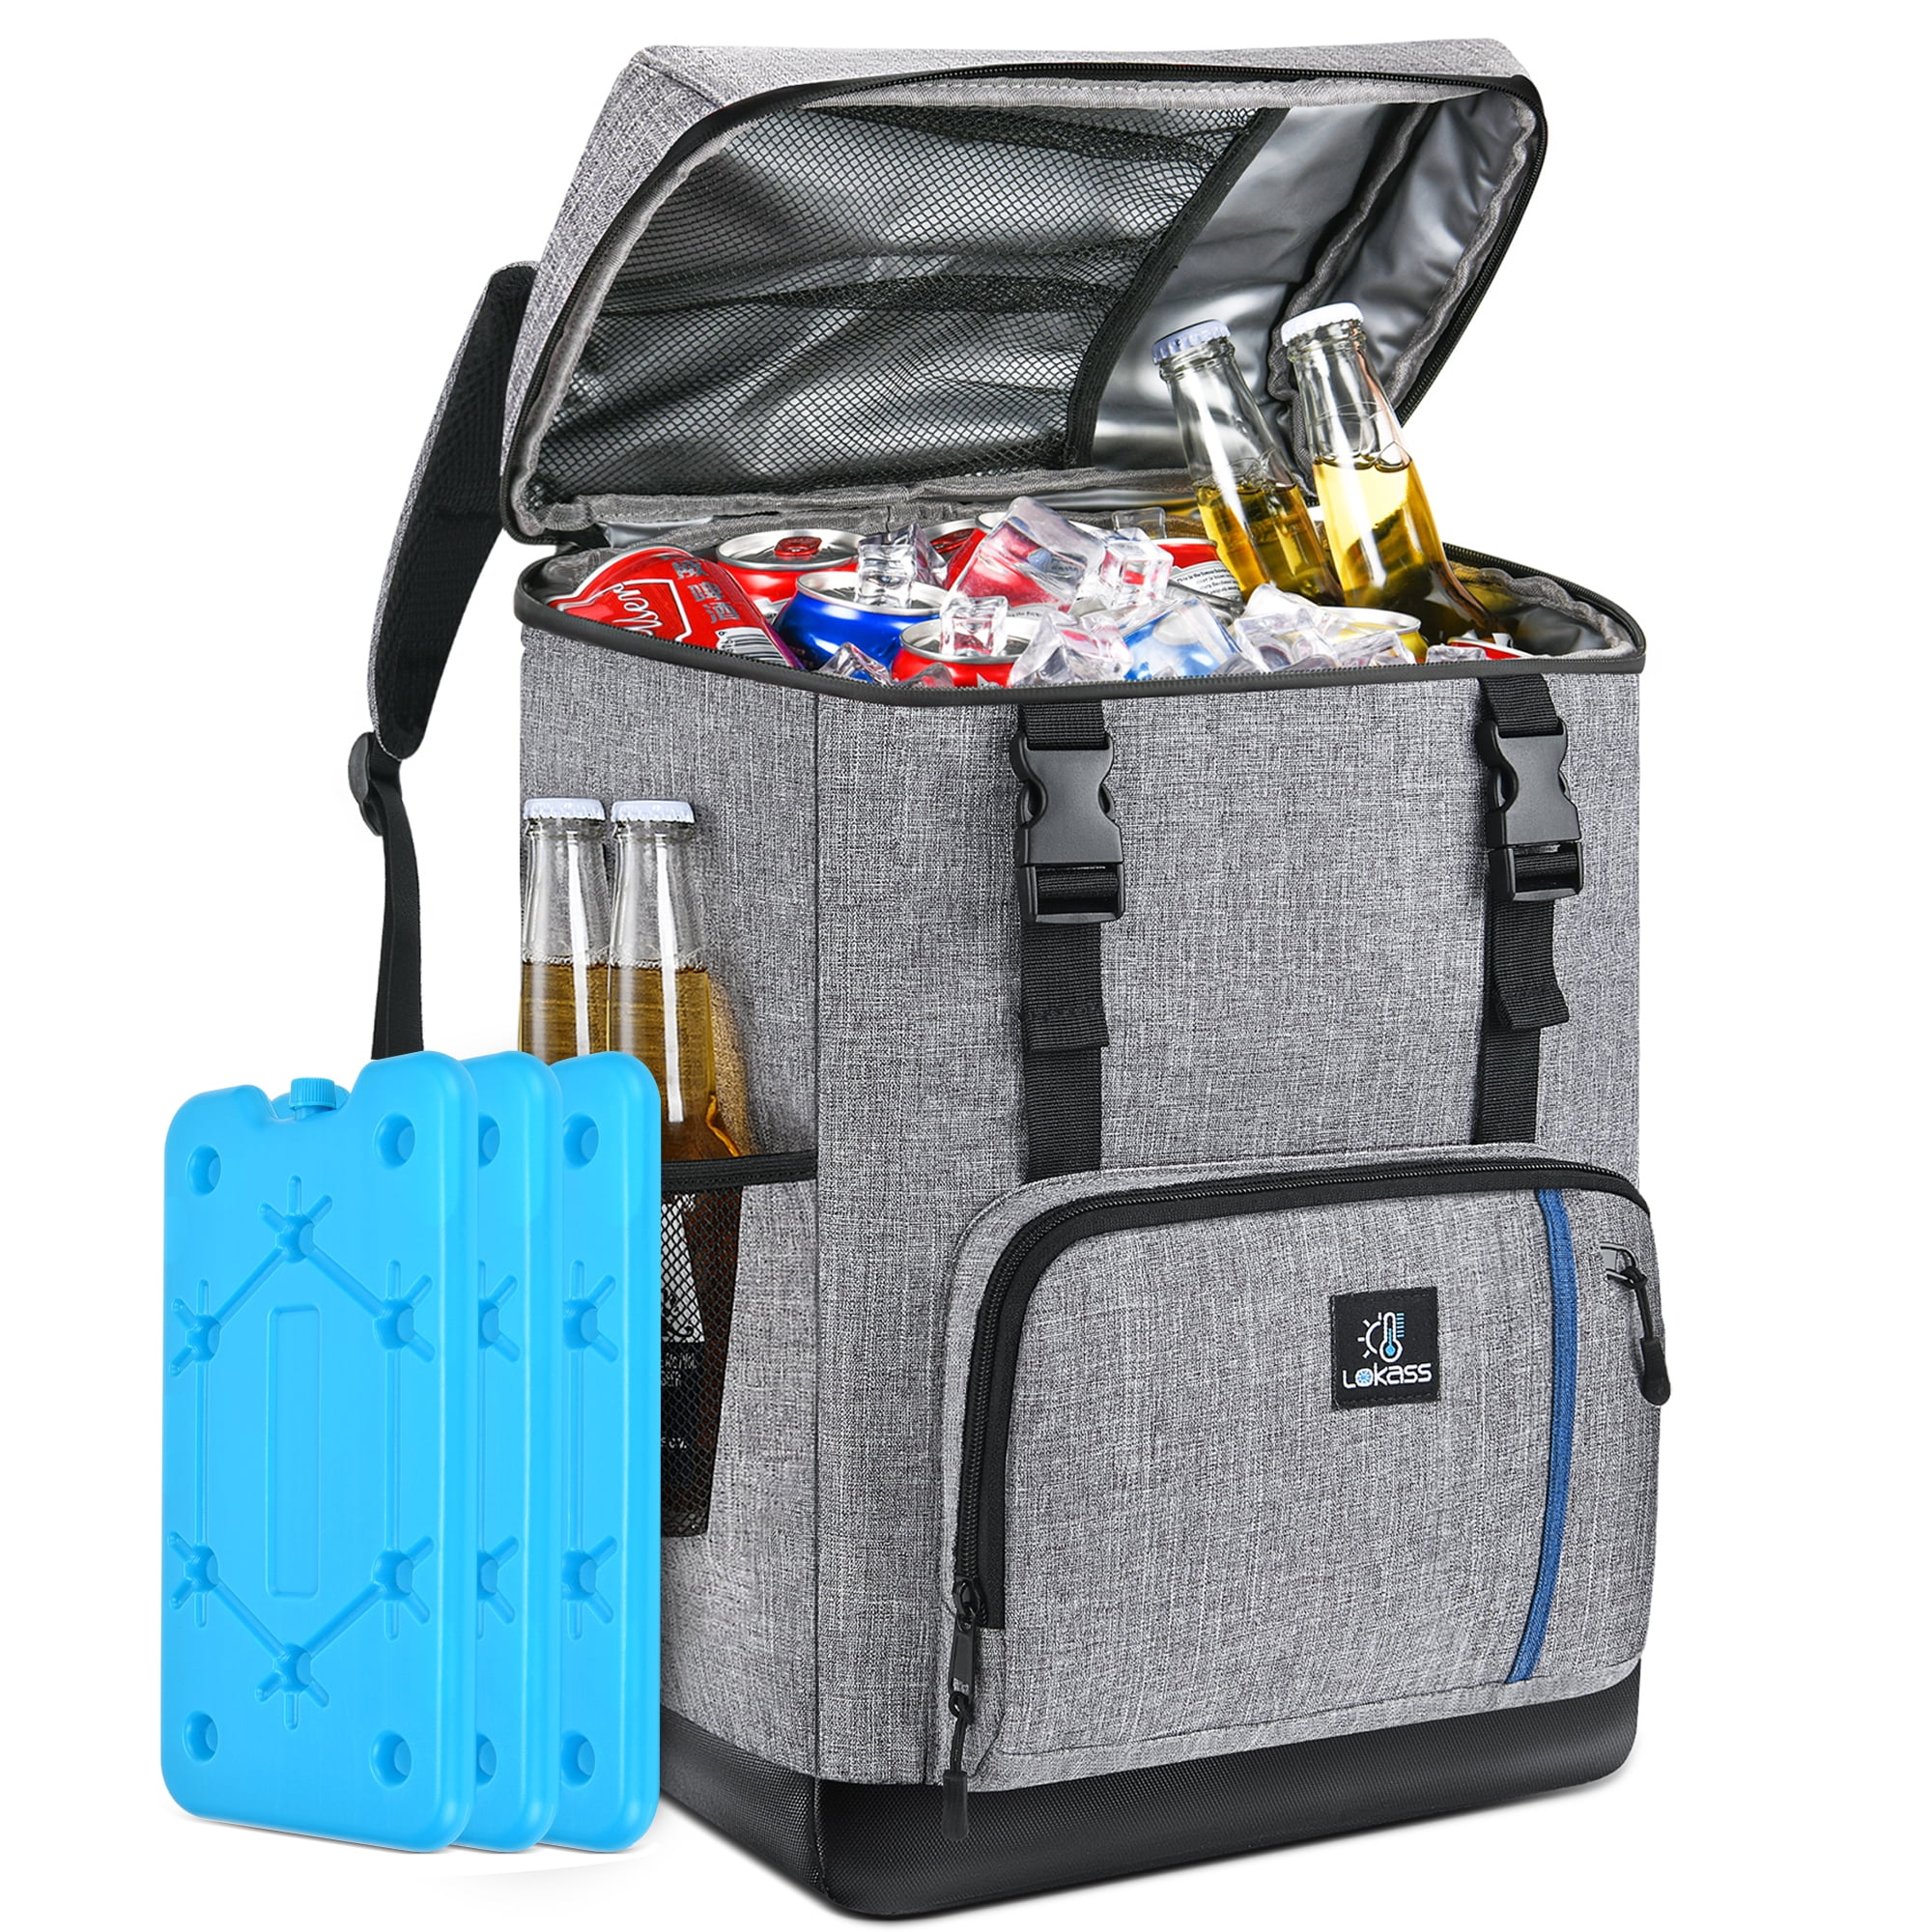 VEVOR Cooler Backpack, 28 Cans Backpack Cooler Leakproof, Waterproof Insulated  Backpack Cooler for Hiking, Camping, BBQ, Grey LZBBHSDL20LDDLN18V0 - The  Home Depot